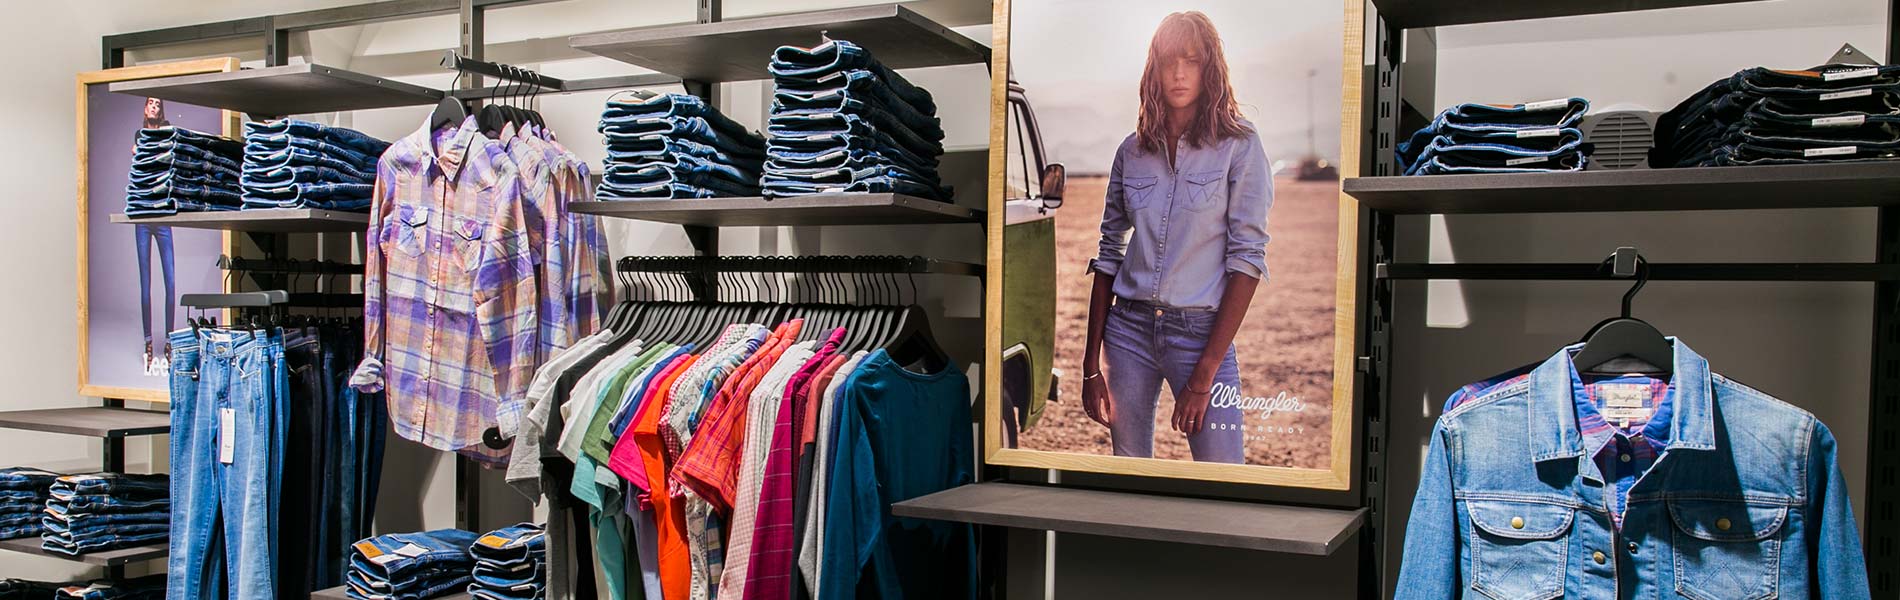 Lee Wrangler Zamość - sklepy z oryginalną odzieżą jeansową Zamość, Biłgoraj - Lee, Wrangler, Mustang, Levis